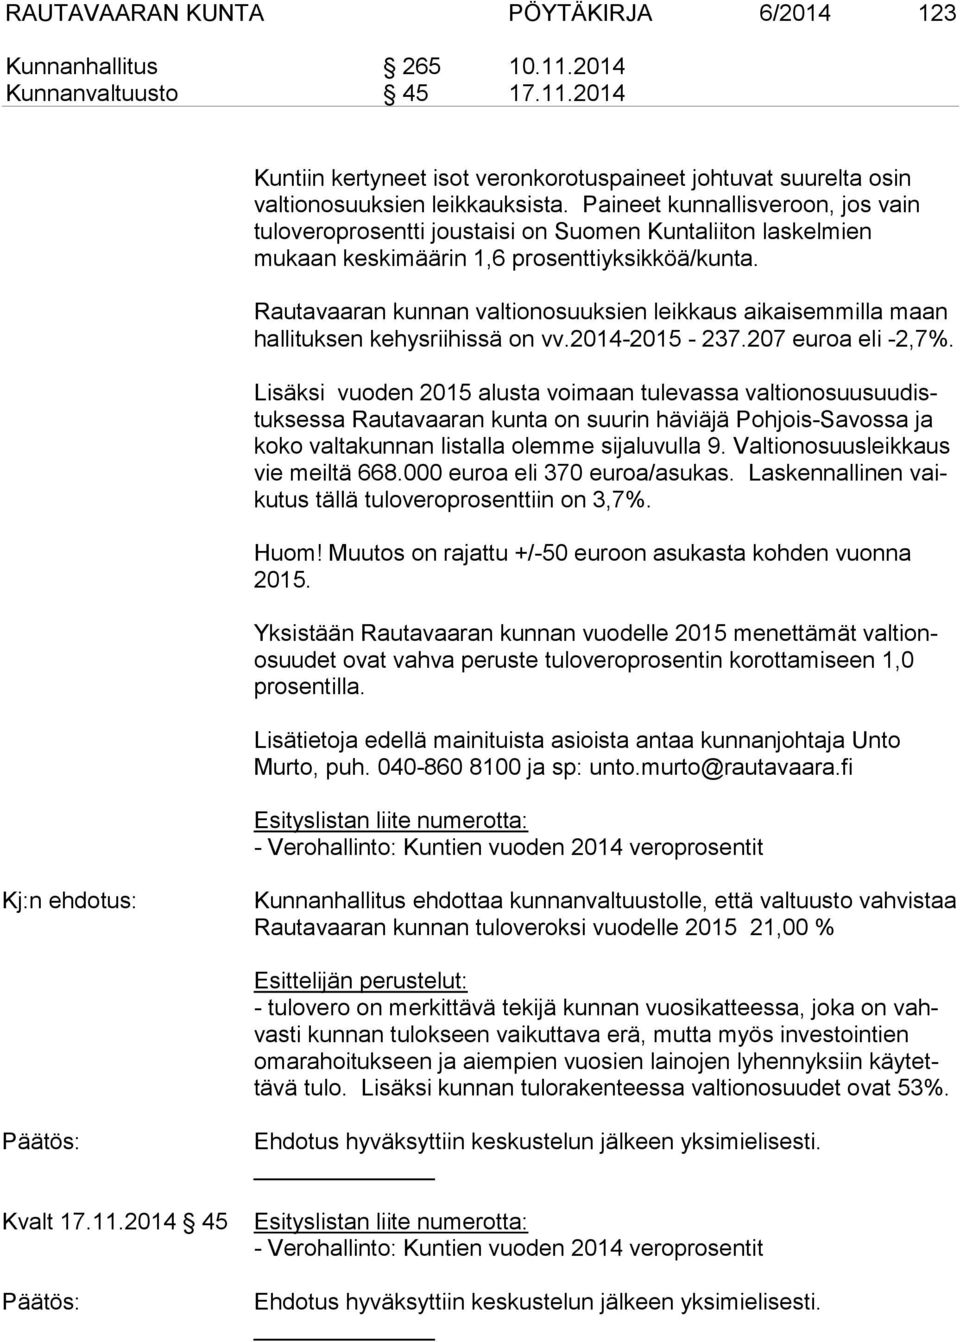 Rautavaaran kunnan valtionosuuksien leikkaus aikaisemmilla maan hallituksen kehysriihissä on vv.2014-2015 - 237.207 euroa eli -2,7%.